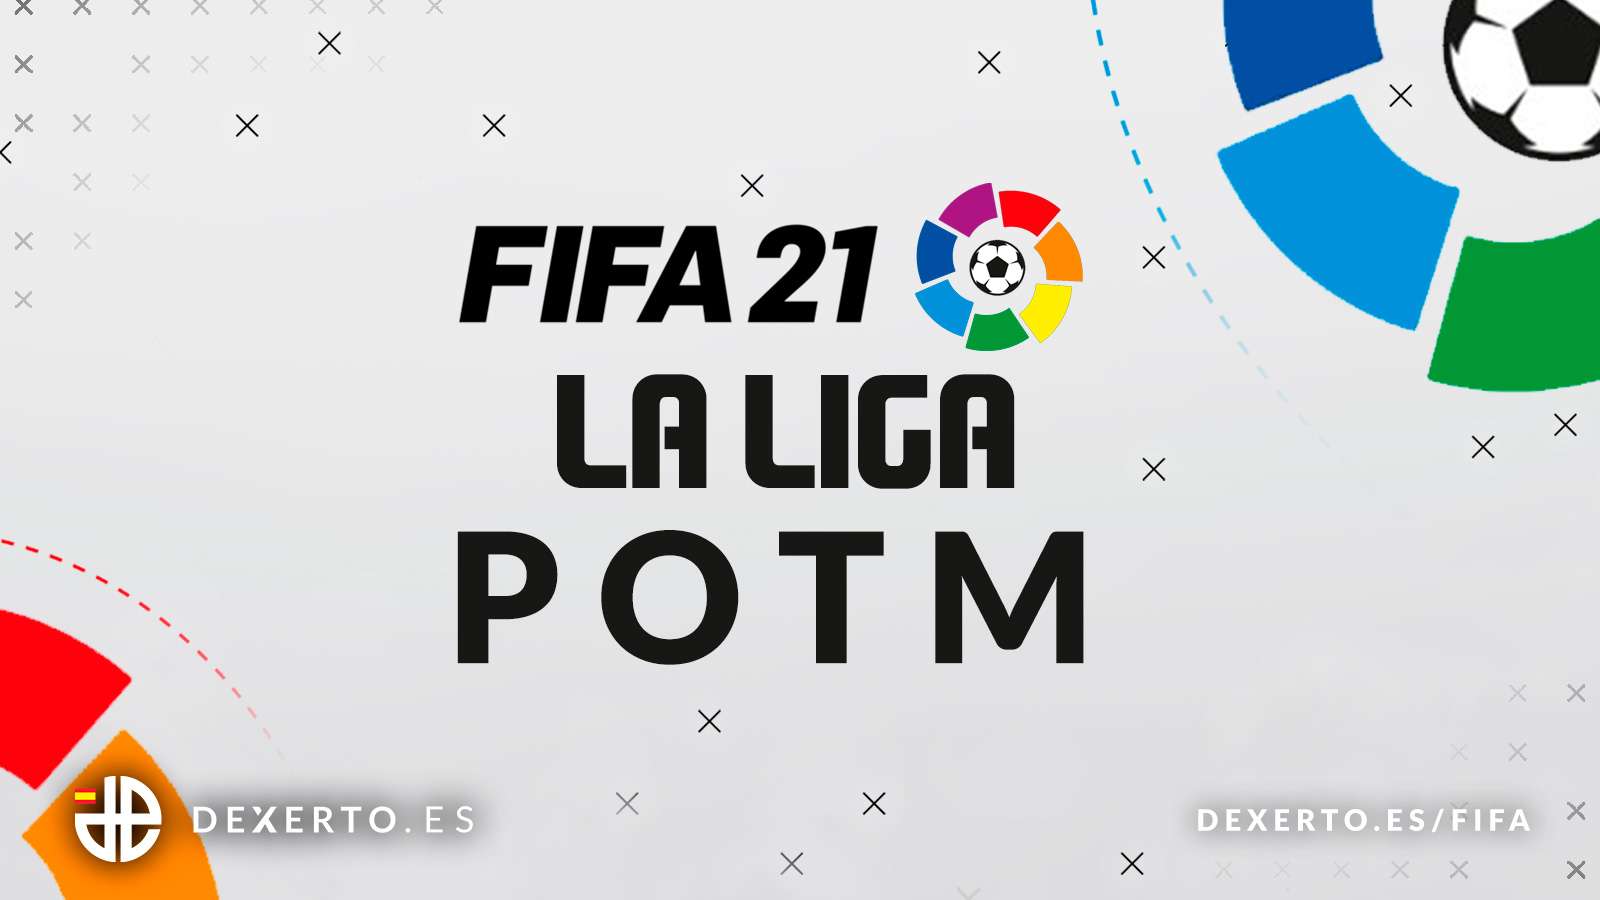 Logo de la liga y FIFA 21